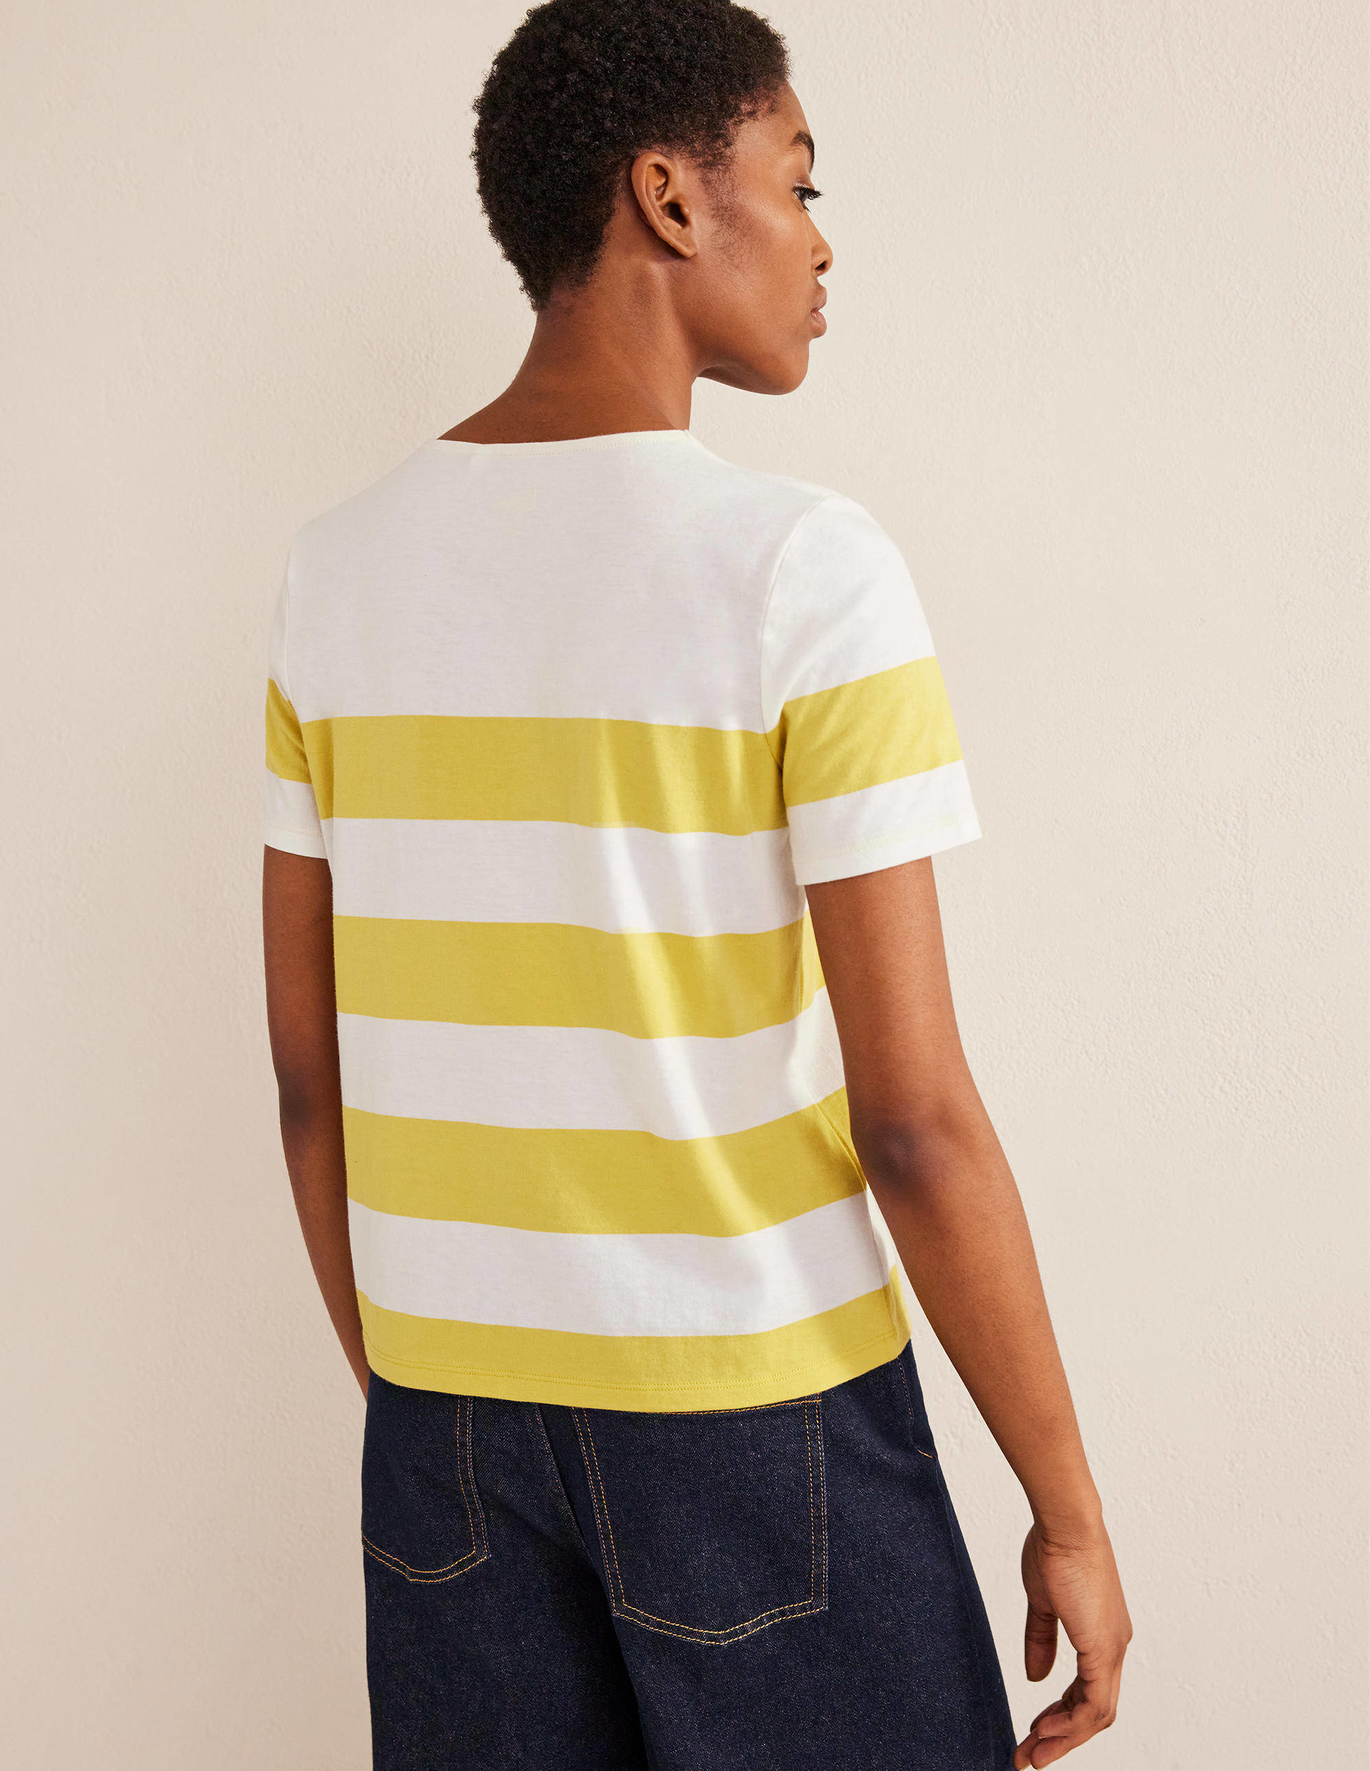 보덴 Boden Short Sleeve Breton T-Shirt - Sweet Honeycomb, Ivory Stripe